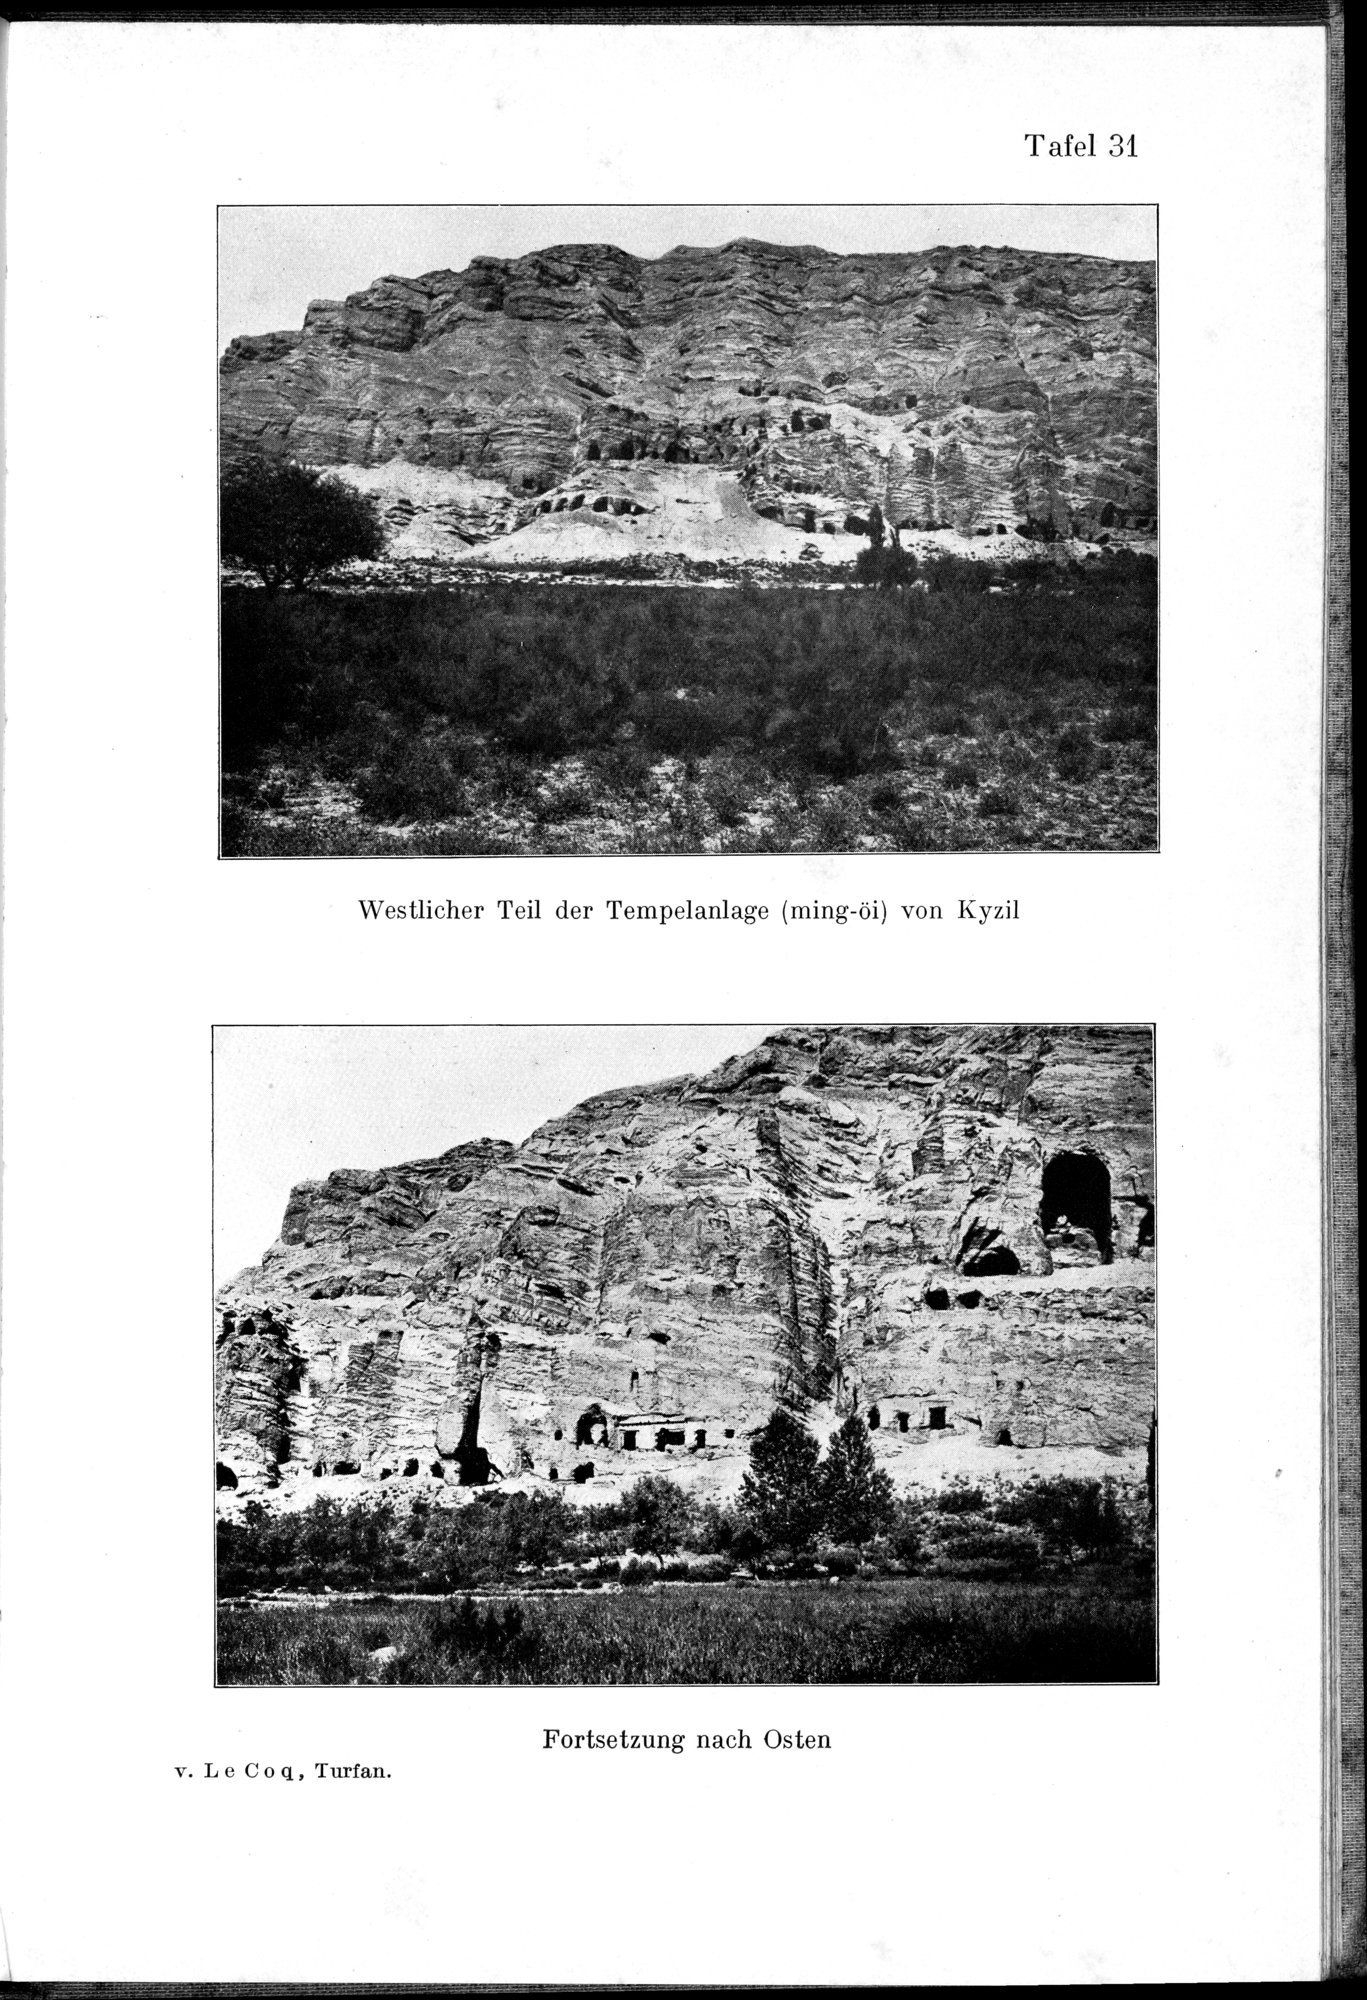 Auf Hellas Spuren in Ostturkistan : vol.1 / Page 151 (Grayscale High Resolution Image)